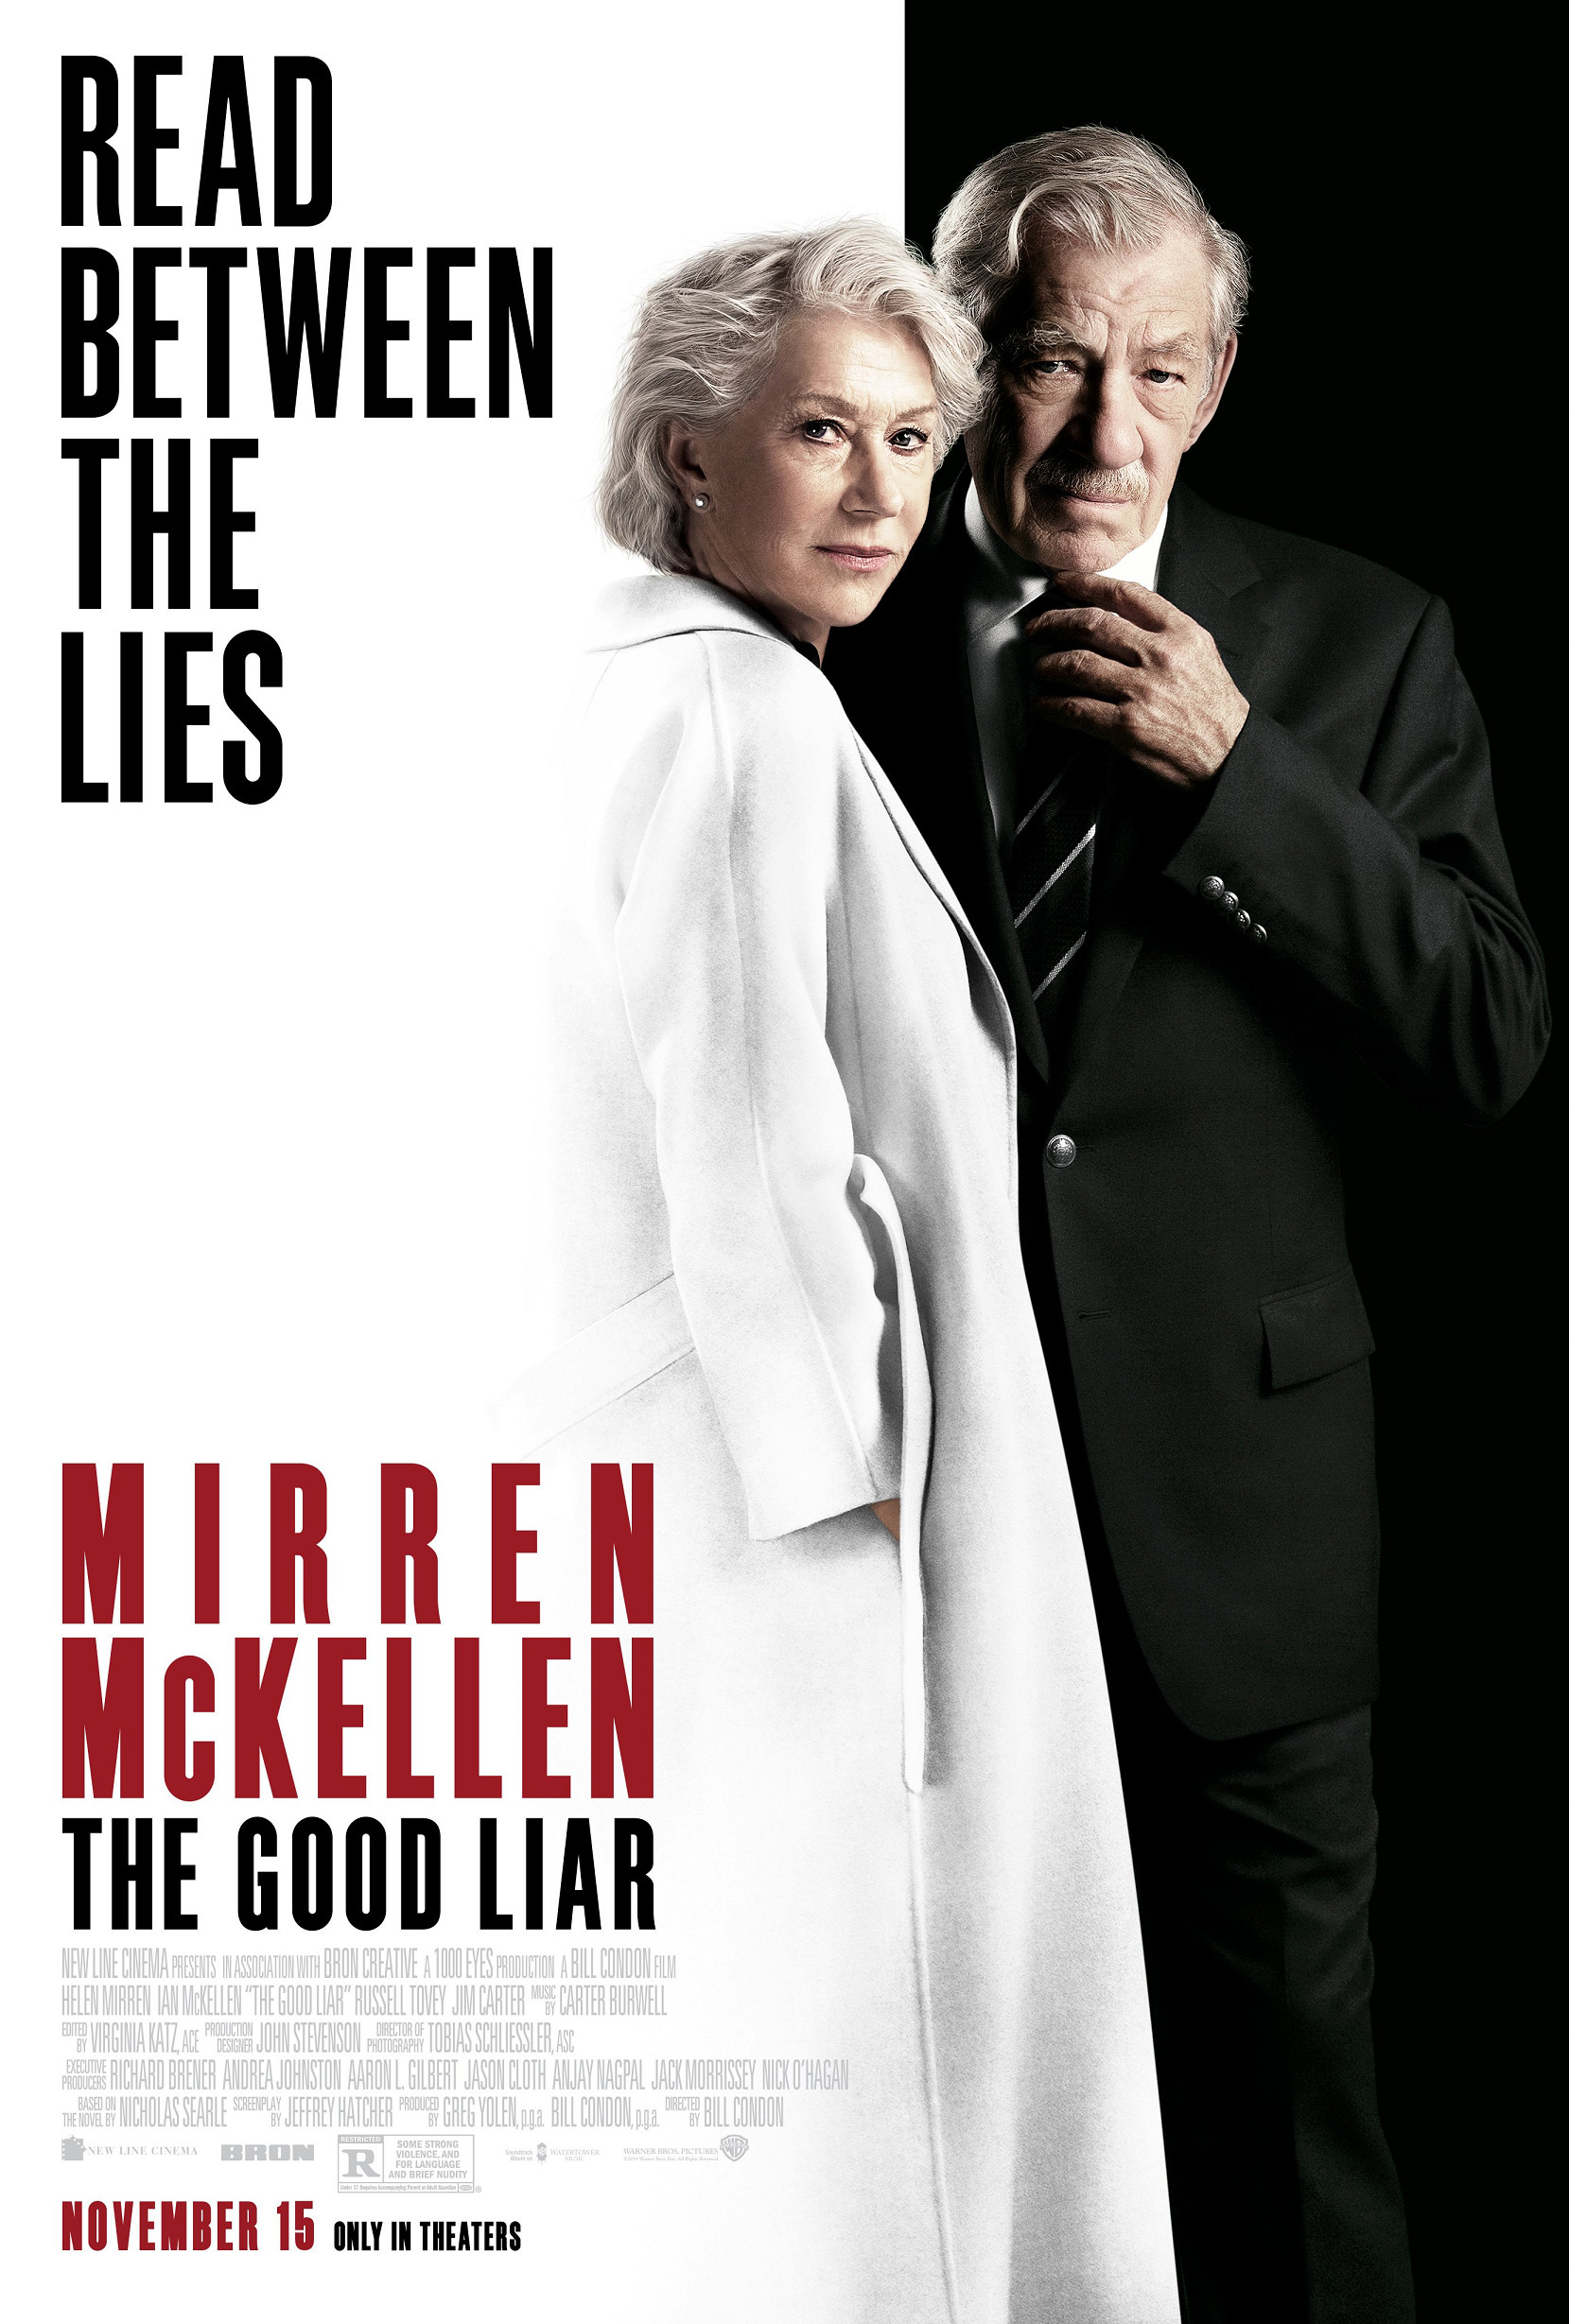 《谎言大师》是一部2019上映的美国悬疑剧情电影,由比尔·康顿执导